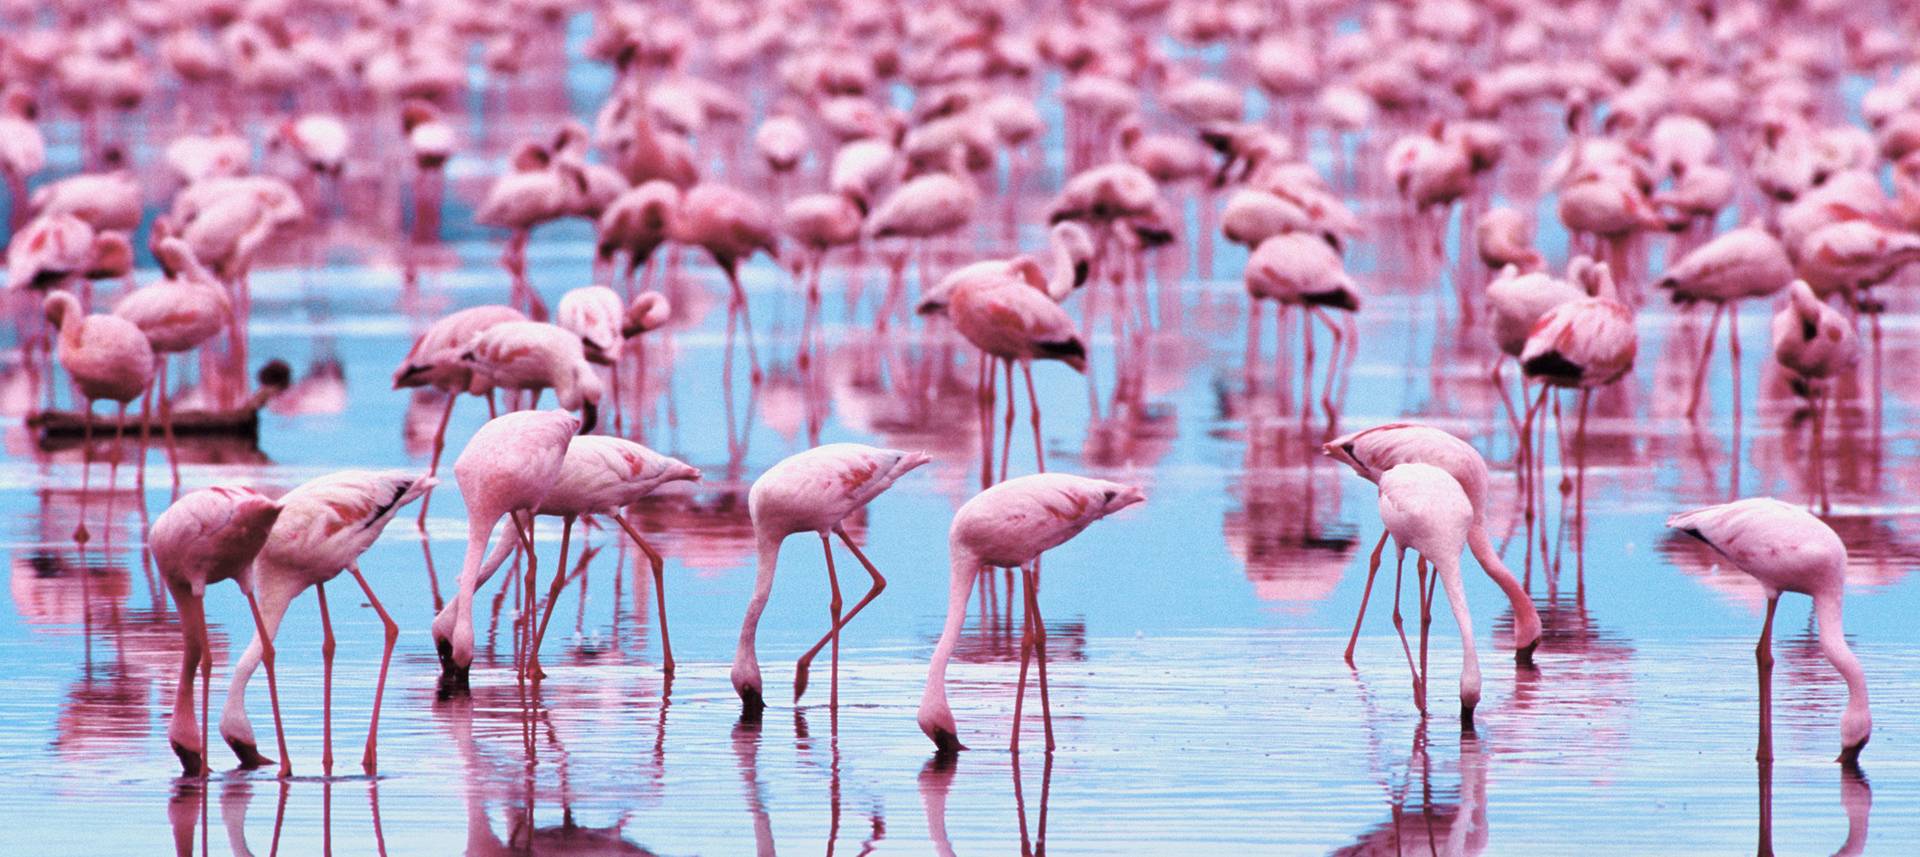 Flamingo Computer Wallpapers Desktop Backgrounds  2560x1600  ID367671  Flamingo  wallpaper Pink flamingos birds Flamingo